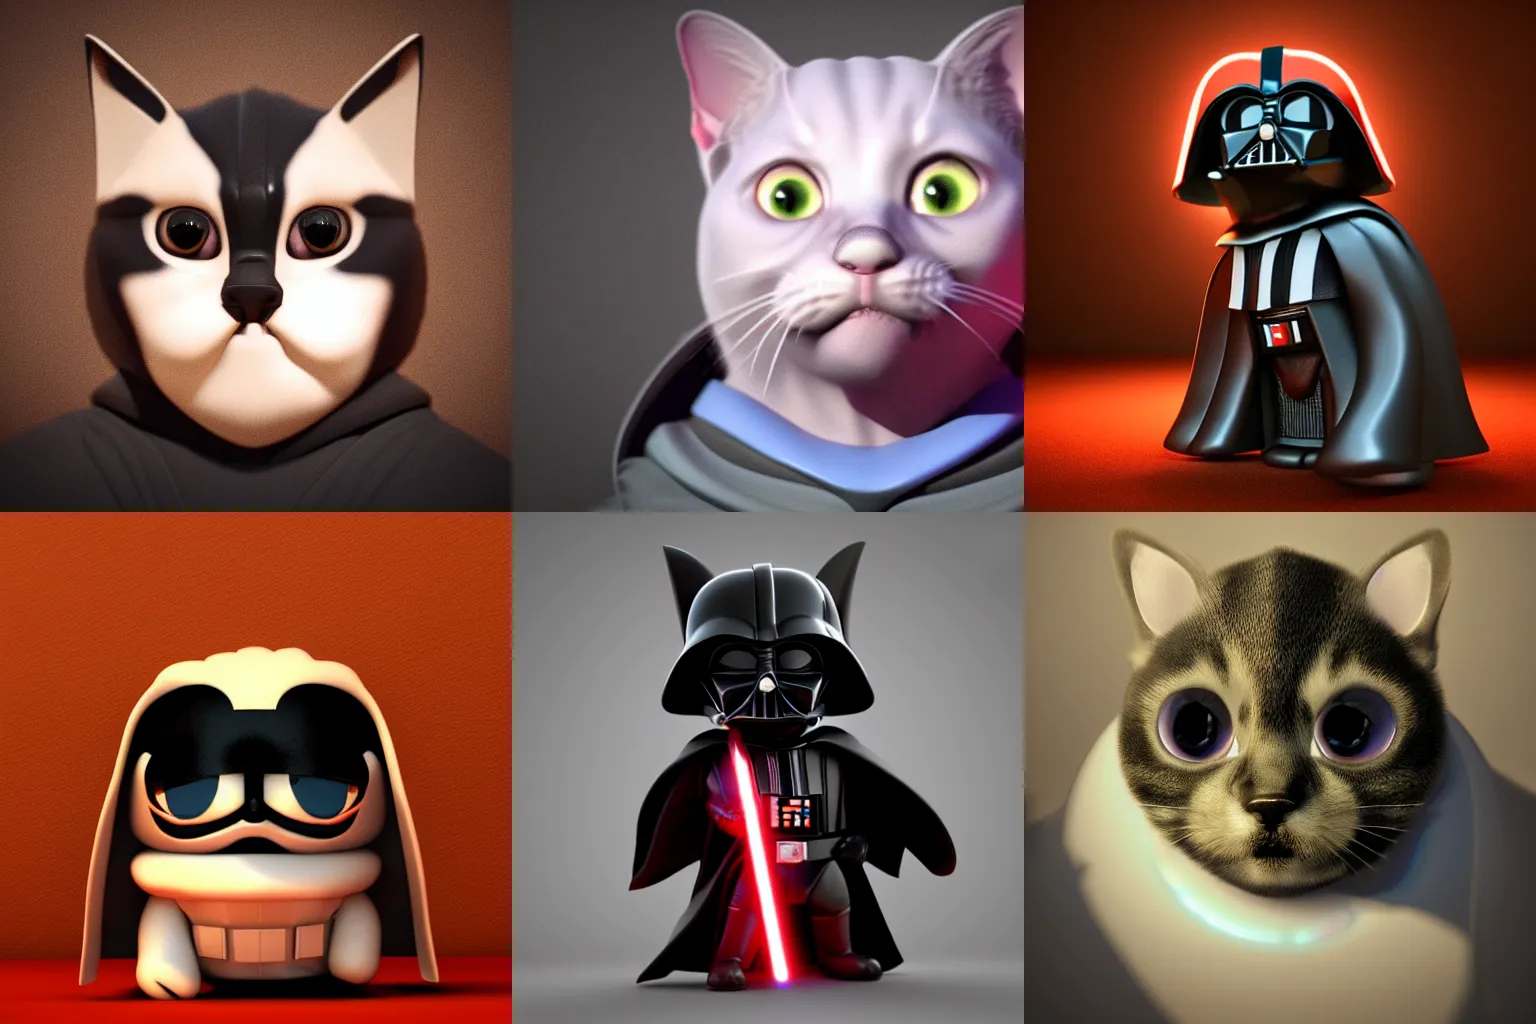 Prompt: 3d render portrait of darth vader kitten, soft lighting, pixar